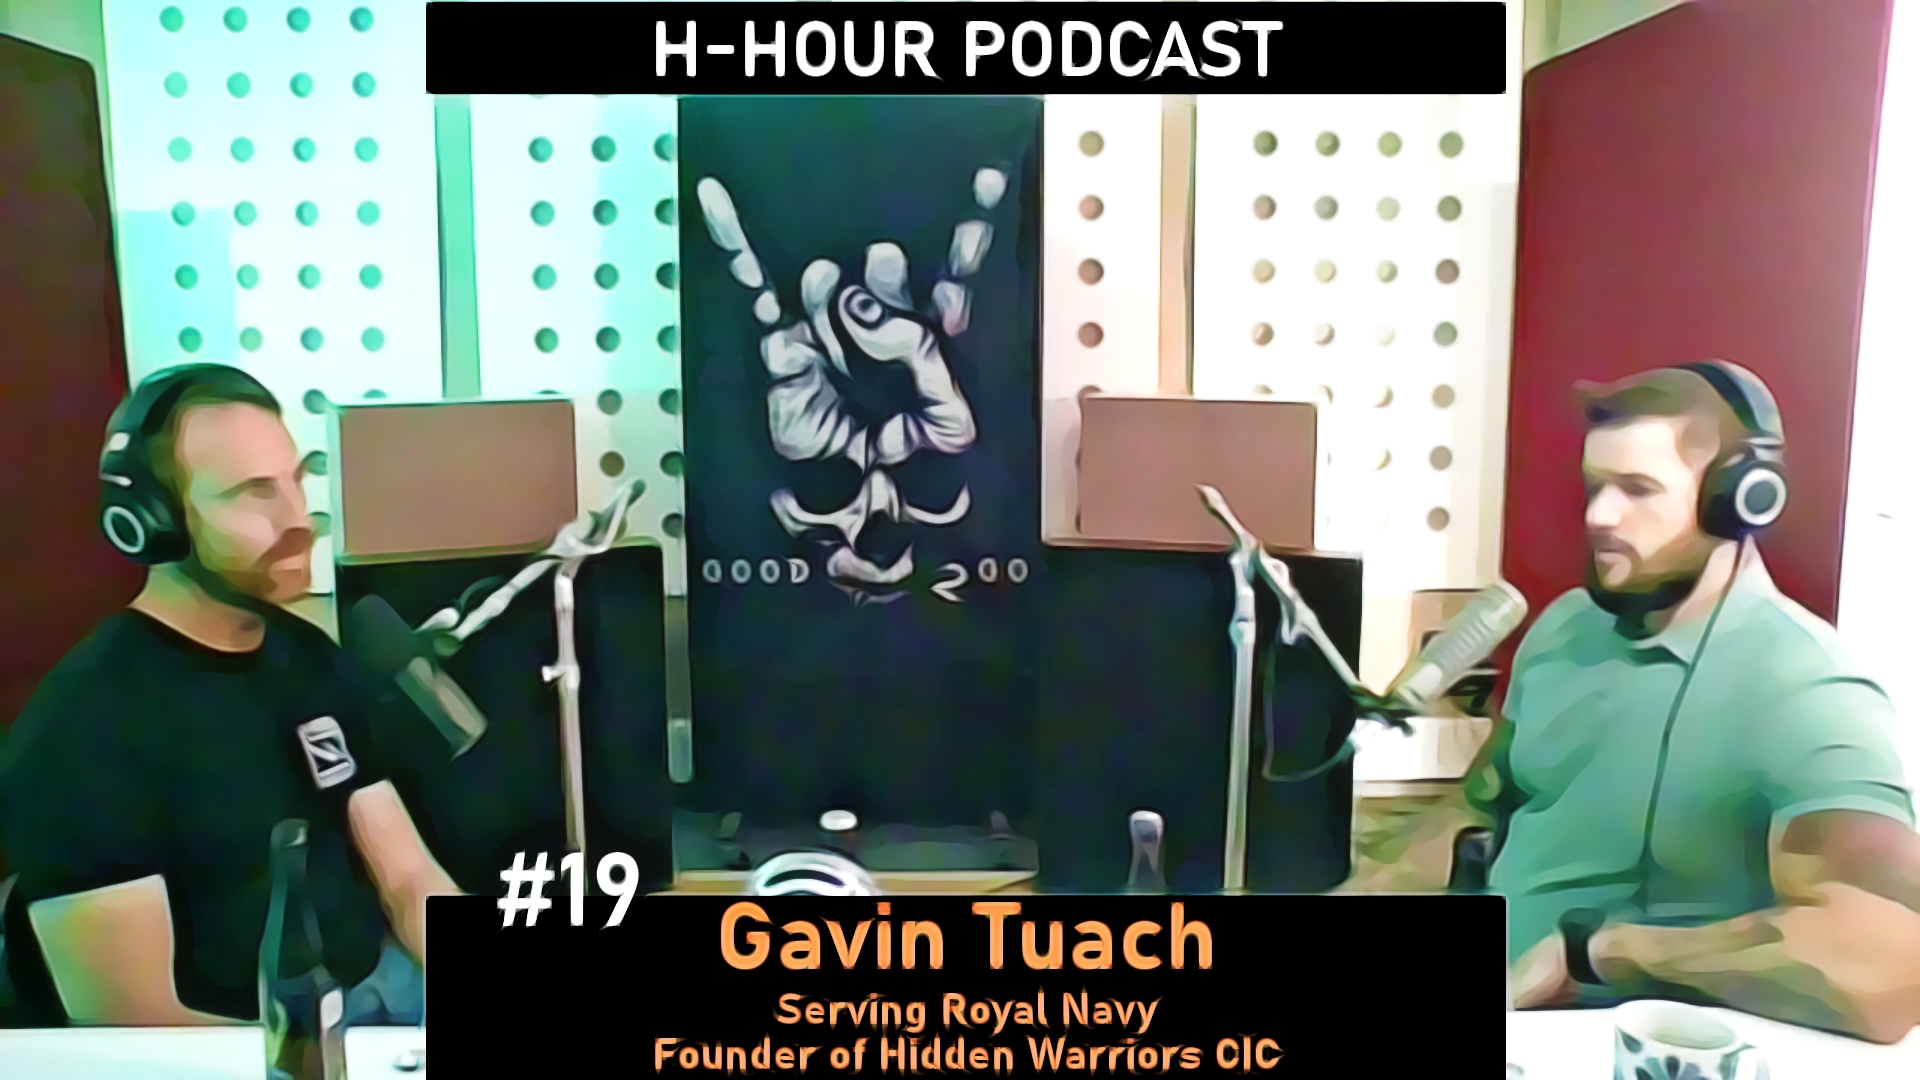 h-hour Podcast NFT #19 gavin tuach cover image